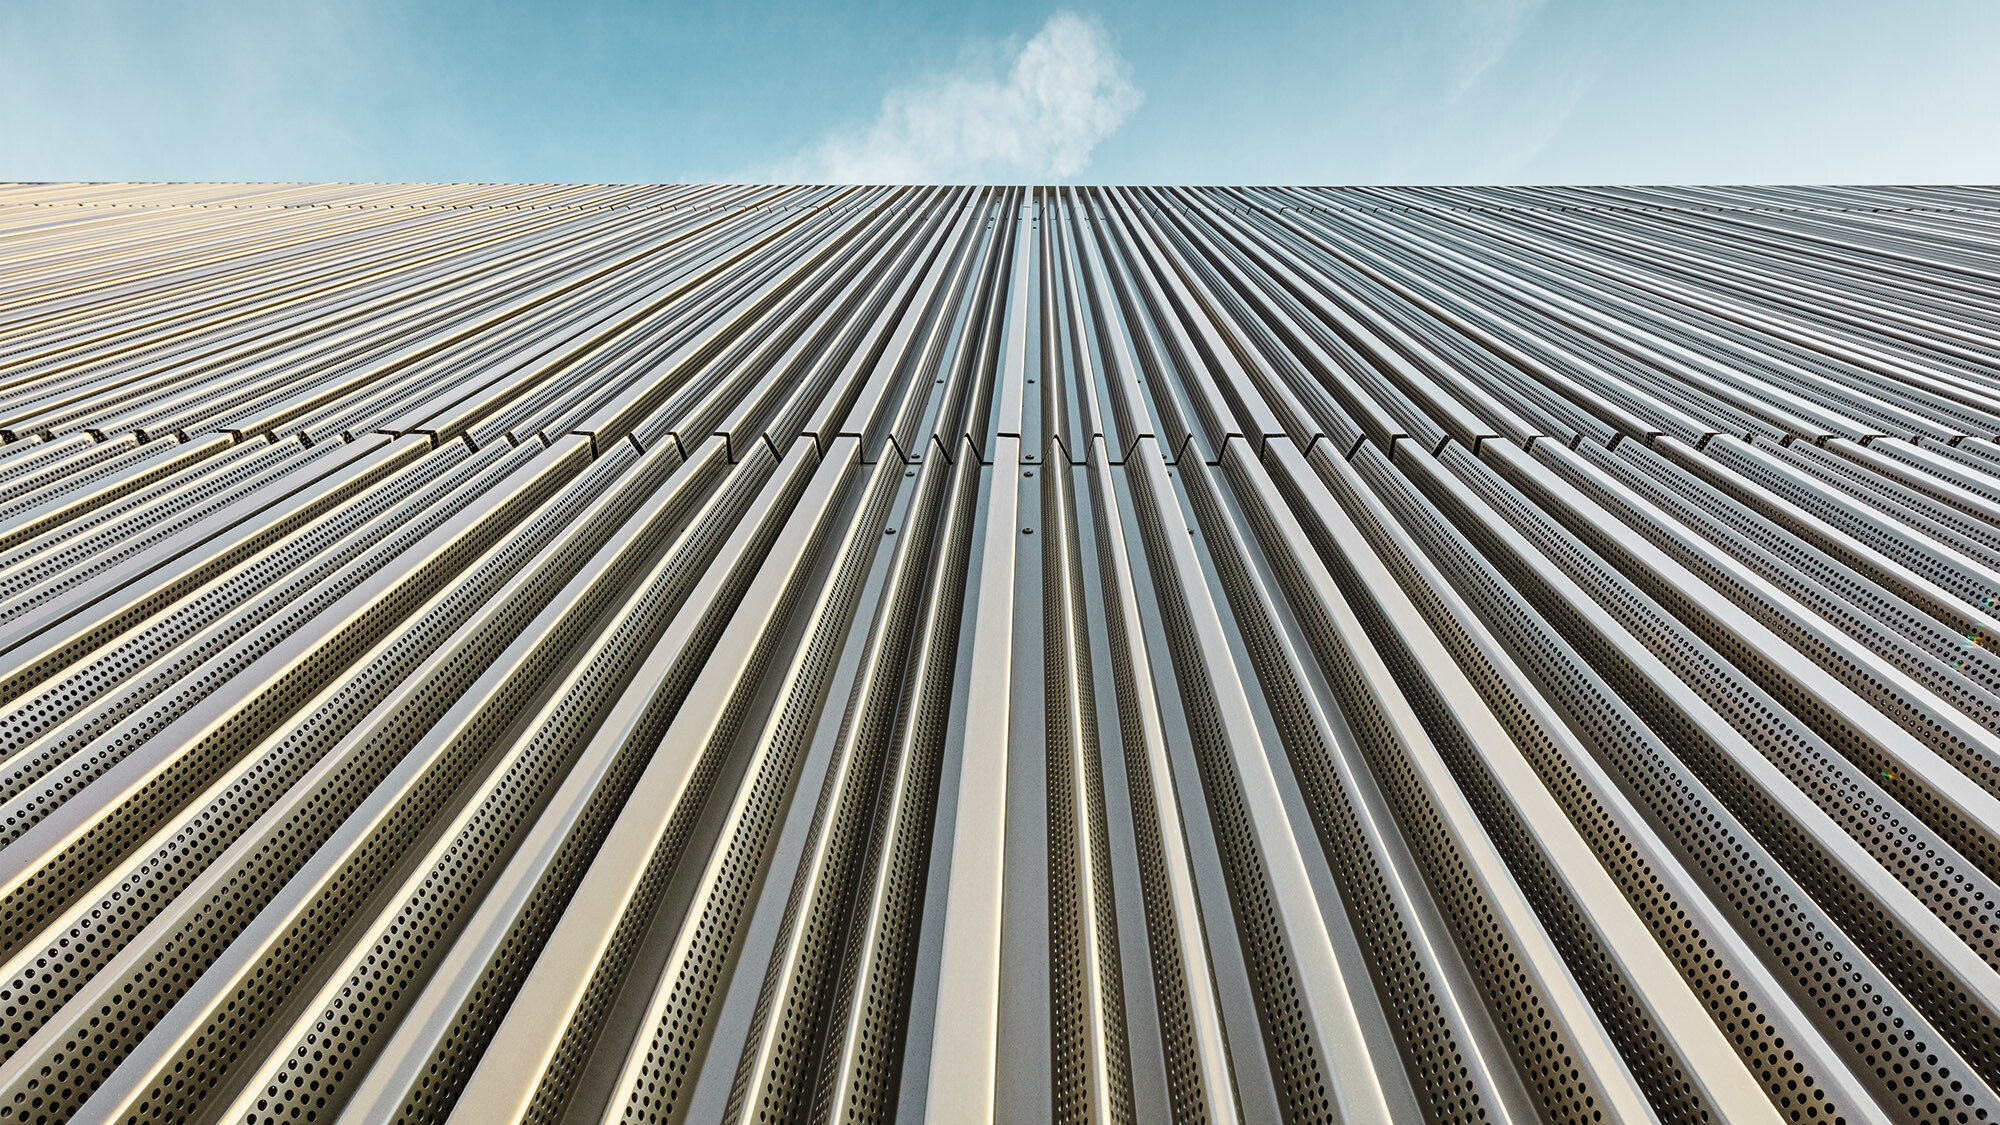 Die Aluminiumfassade mit Profil aus der Froschperspektive, darüber der Himmel.